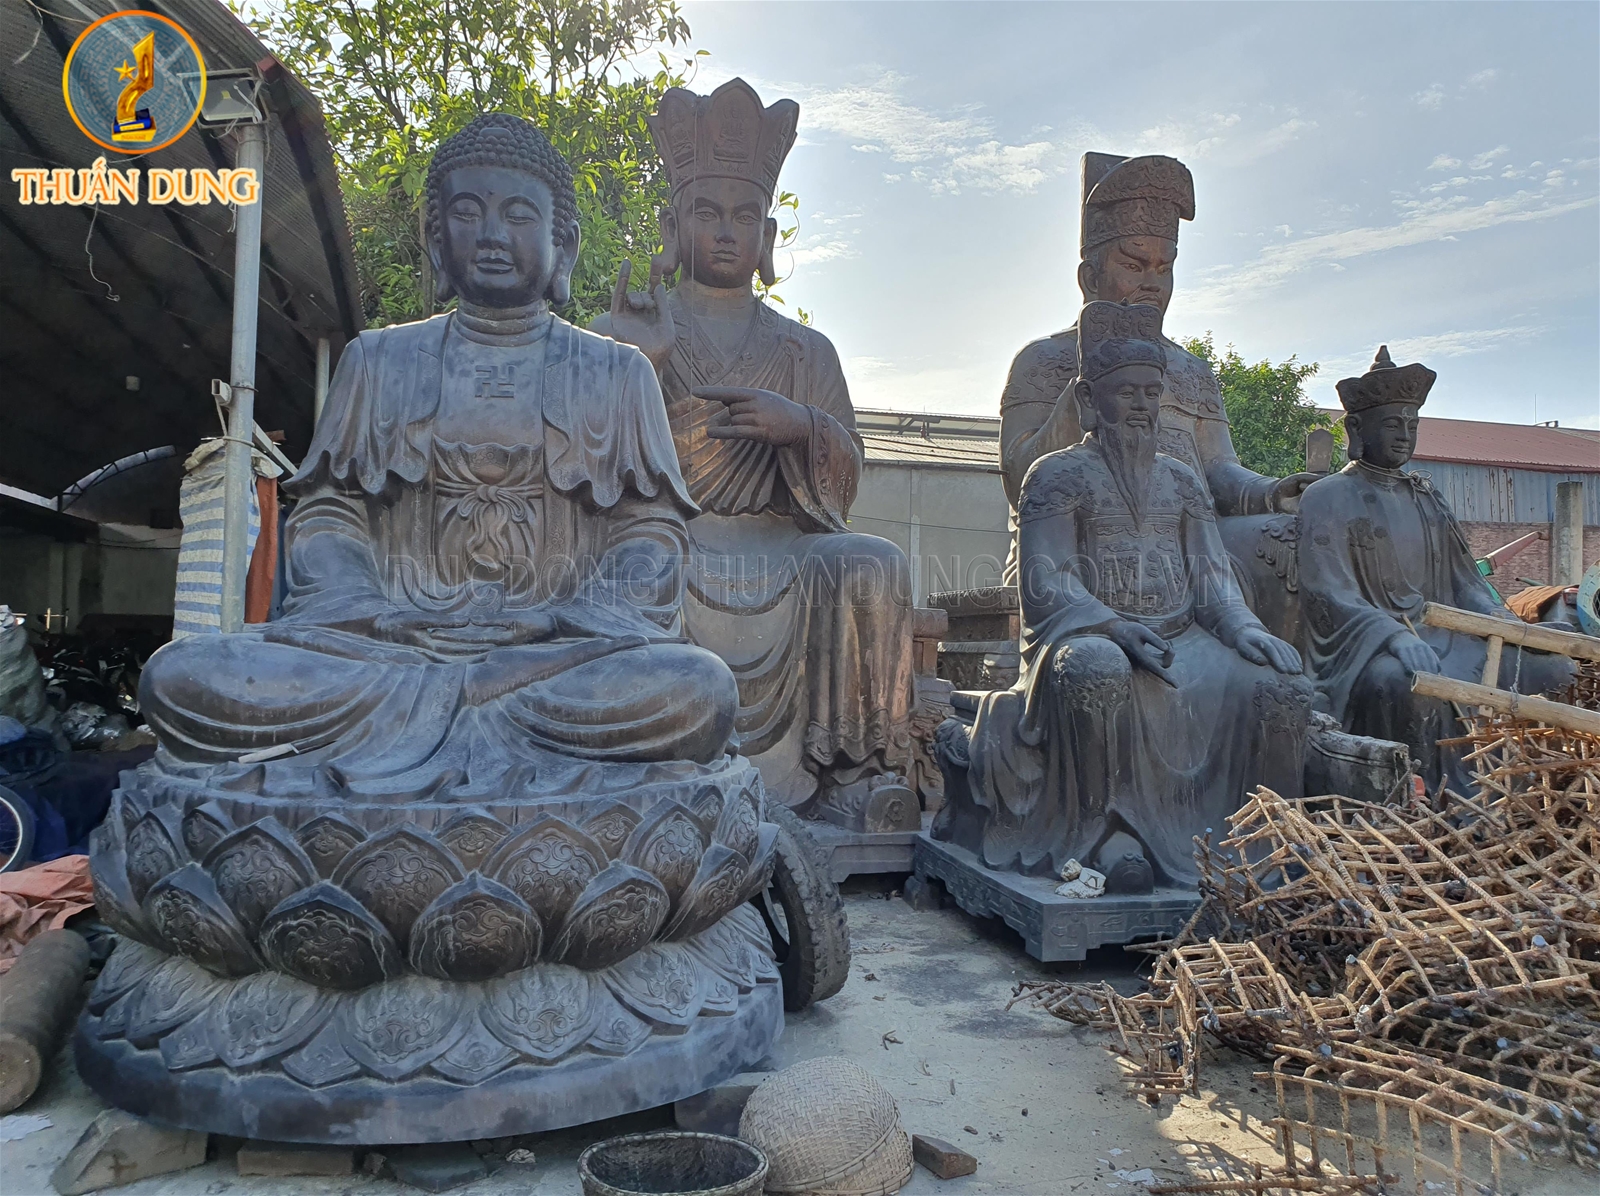 Phật chùa Văn Môn - Bắc Ninh và chùa Lâm Hà - Nghệ An đang được hoàn thiện tại xưởng đúc đồng Thuấn Dung 2